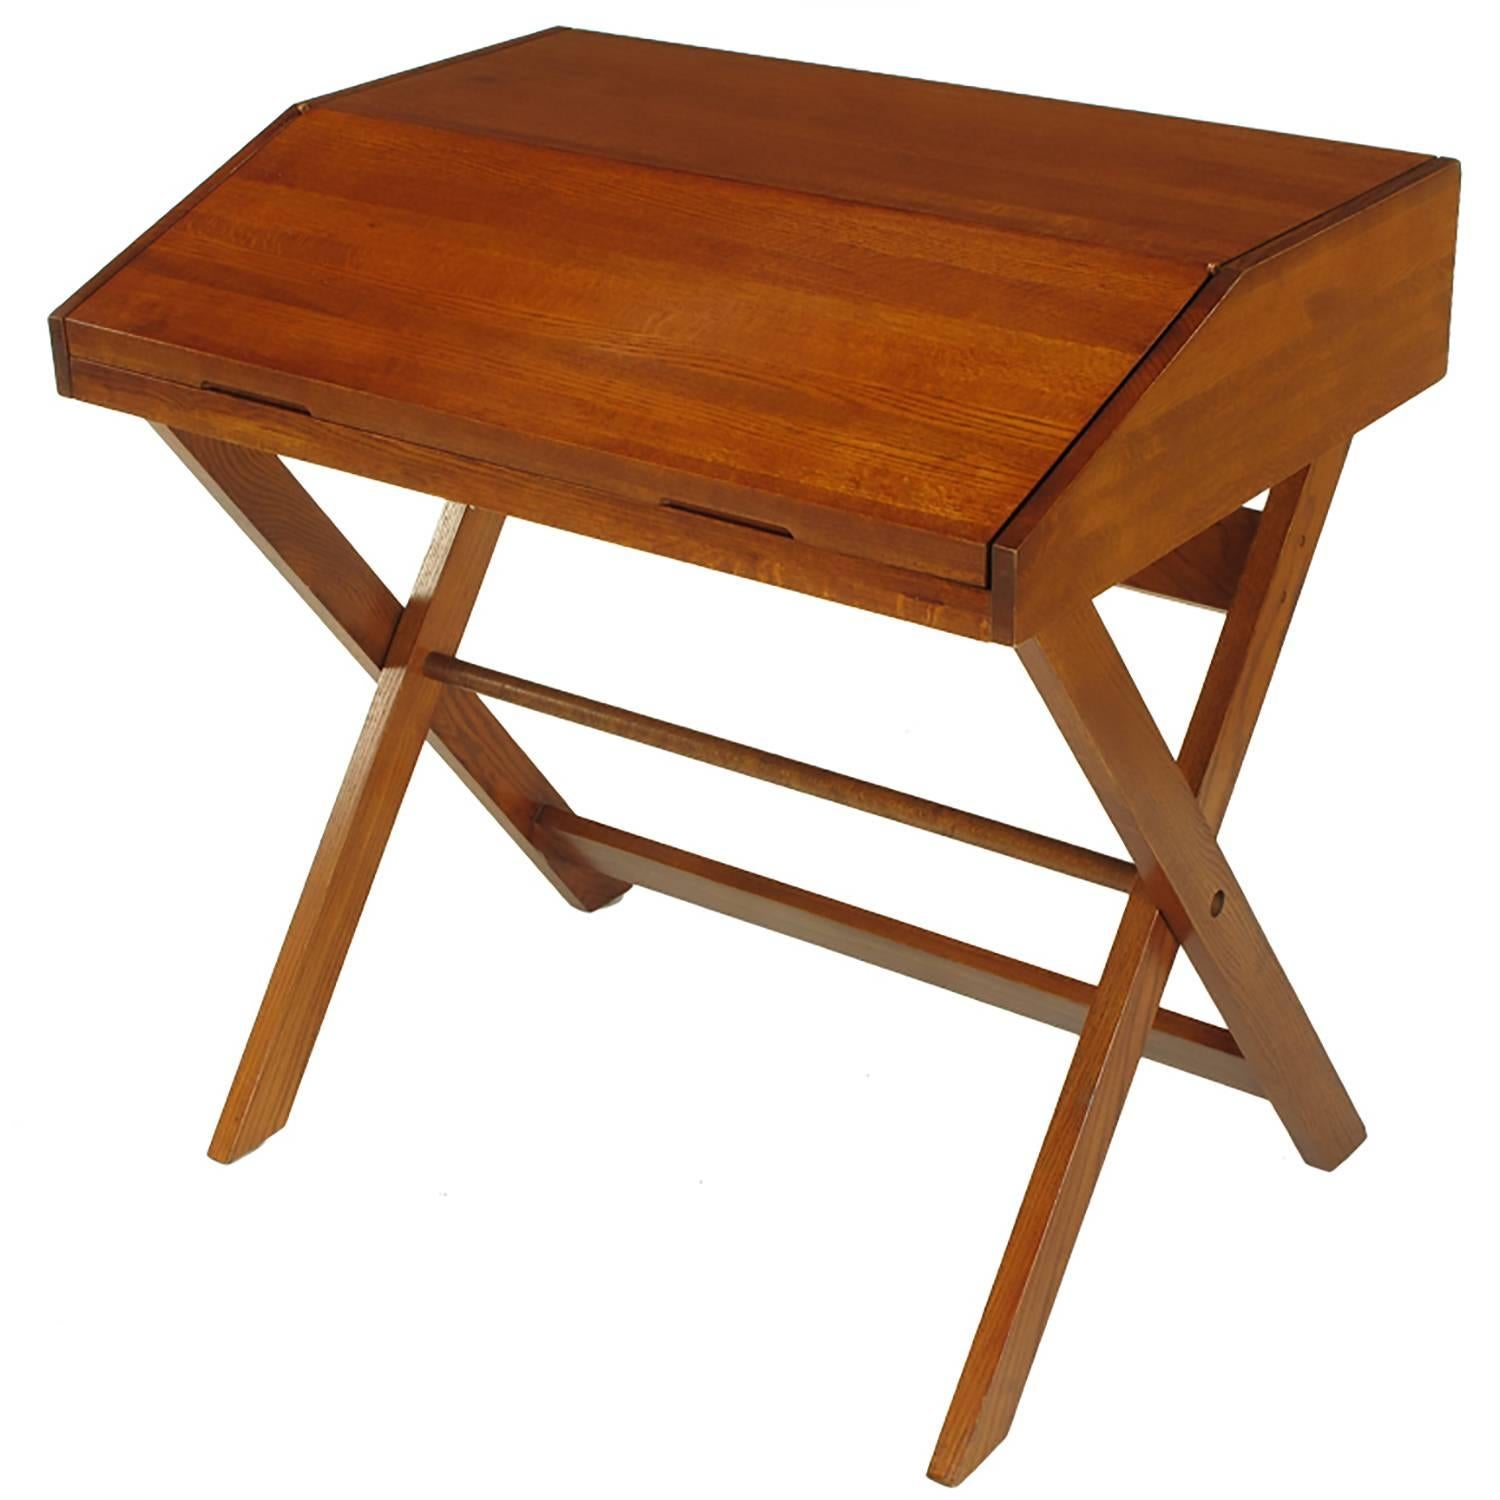 Sorrel Ash-Flip Top Trestle Based Writing Table For Sale